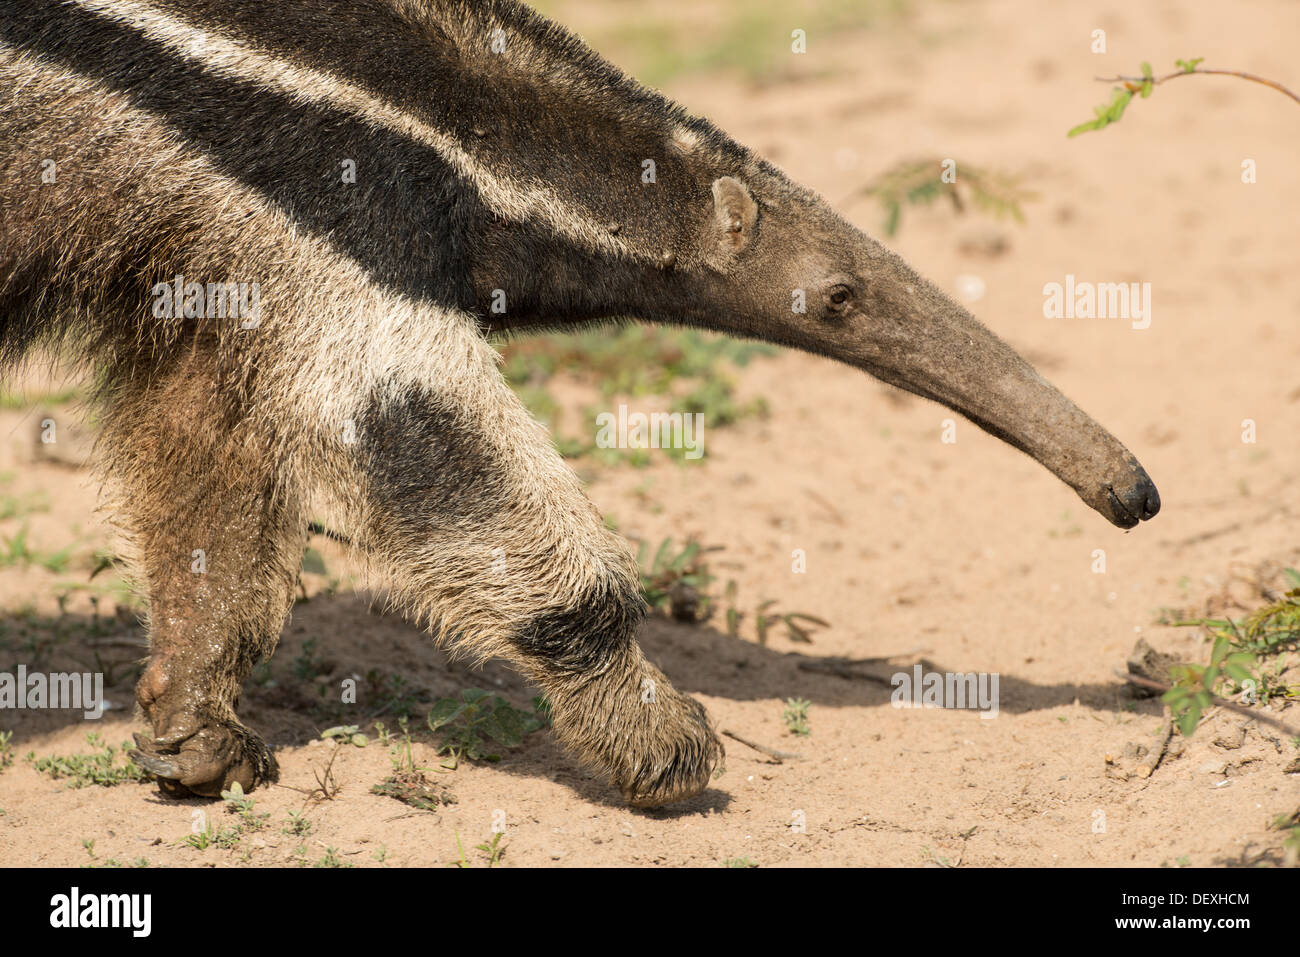 Stock photo closeup image of a giant anteater, Pantanal, Brazil. Stock Photo